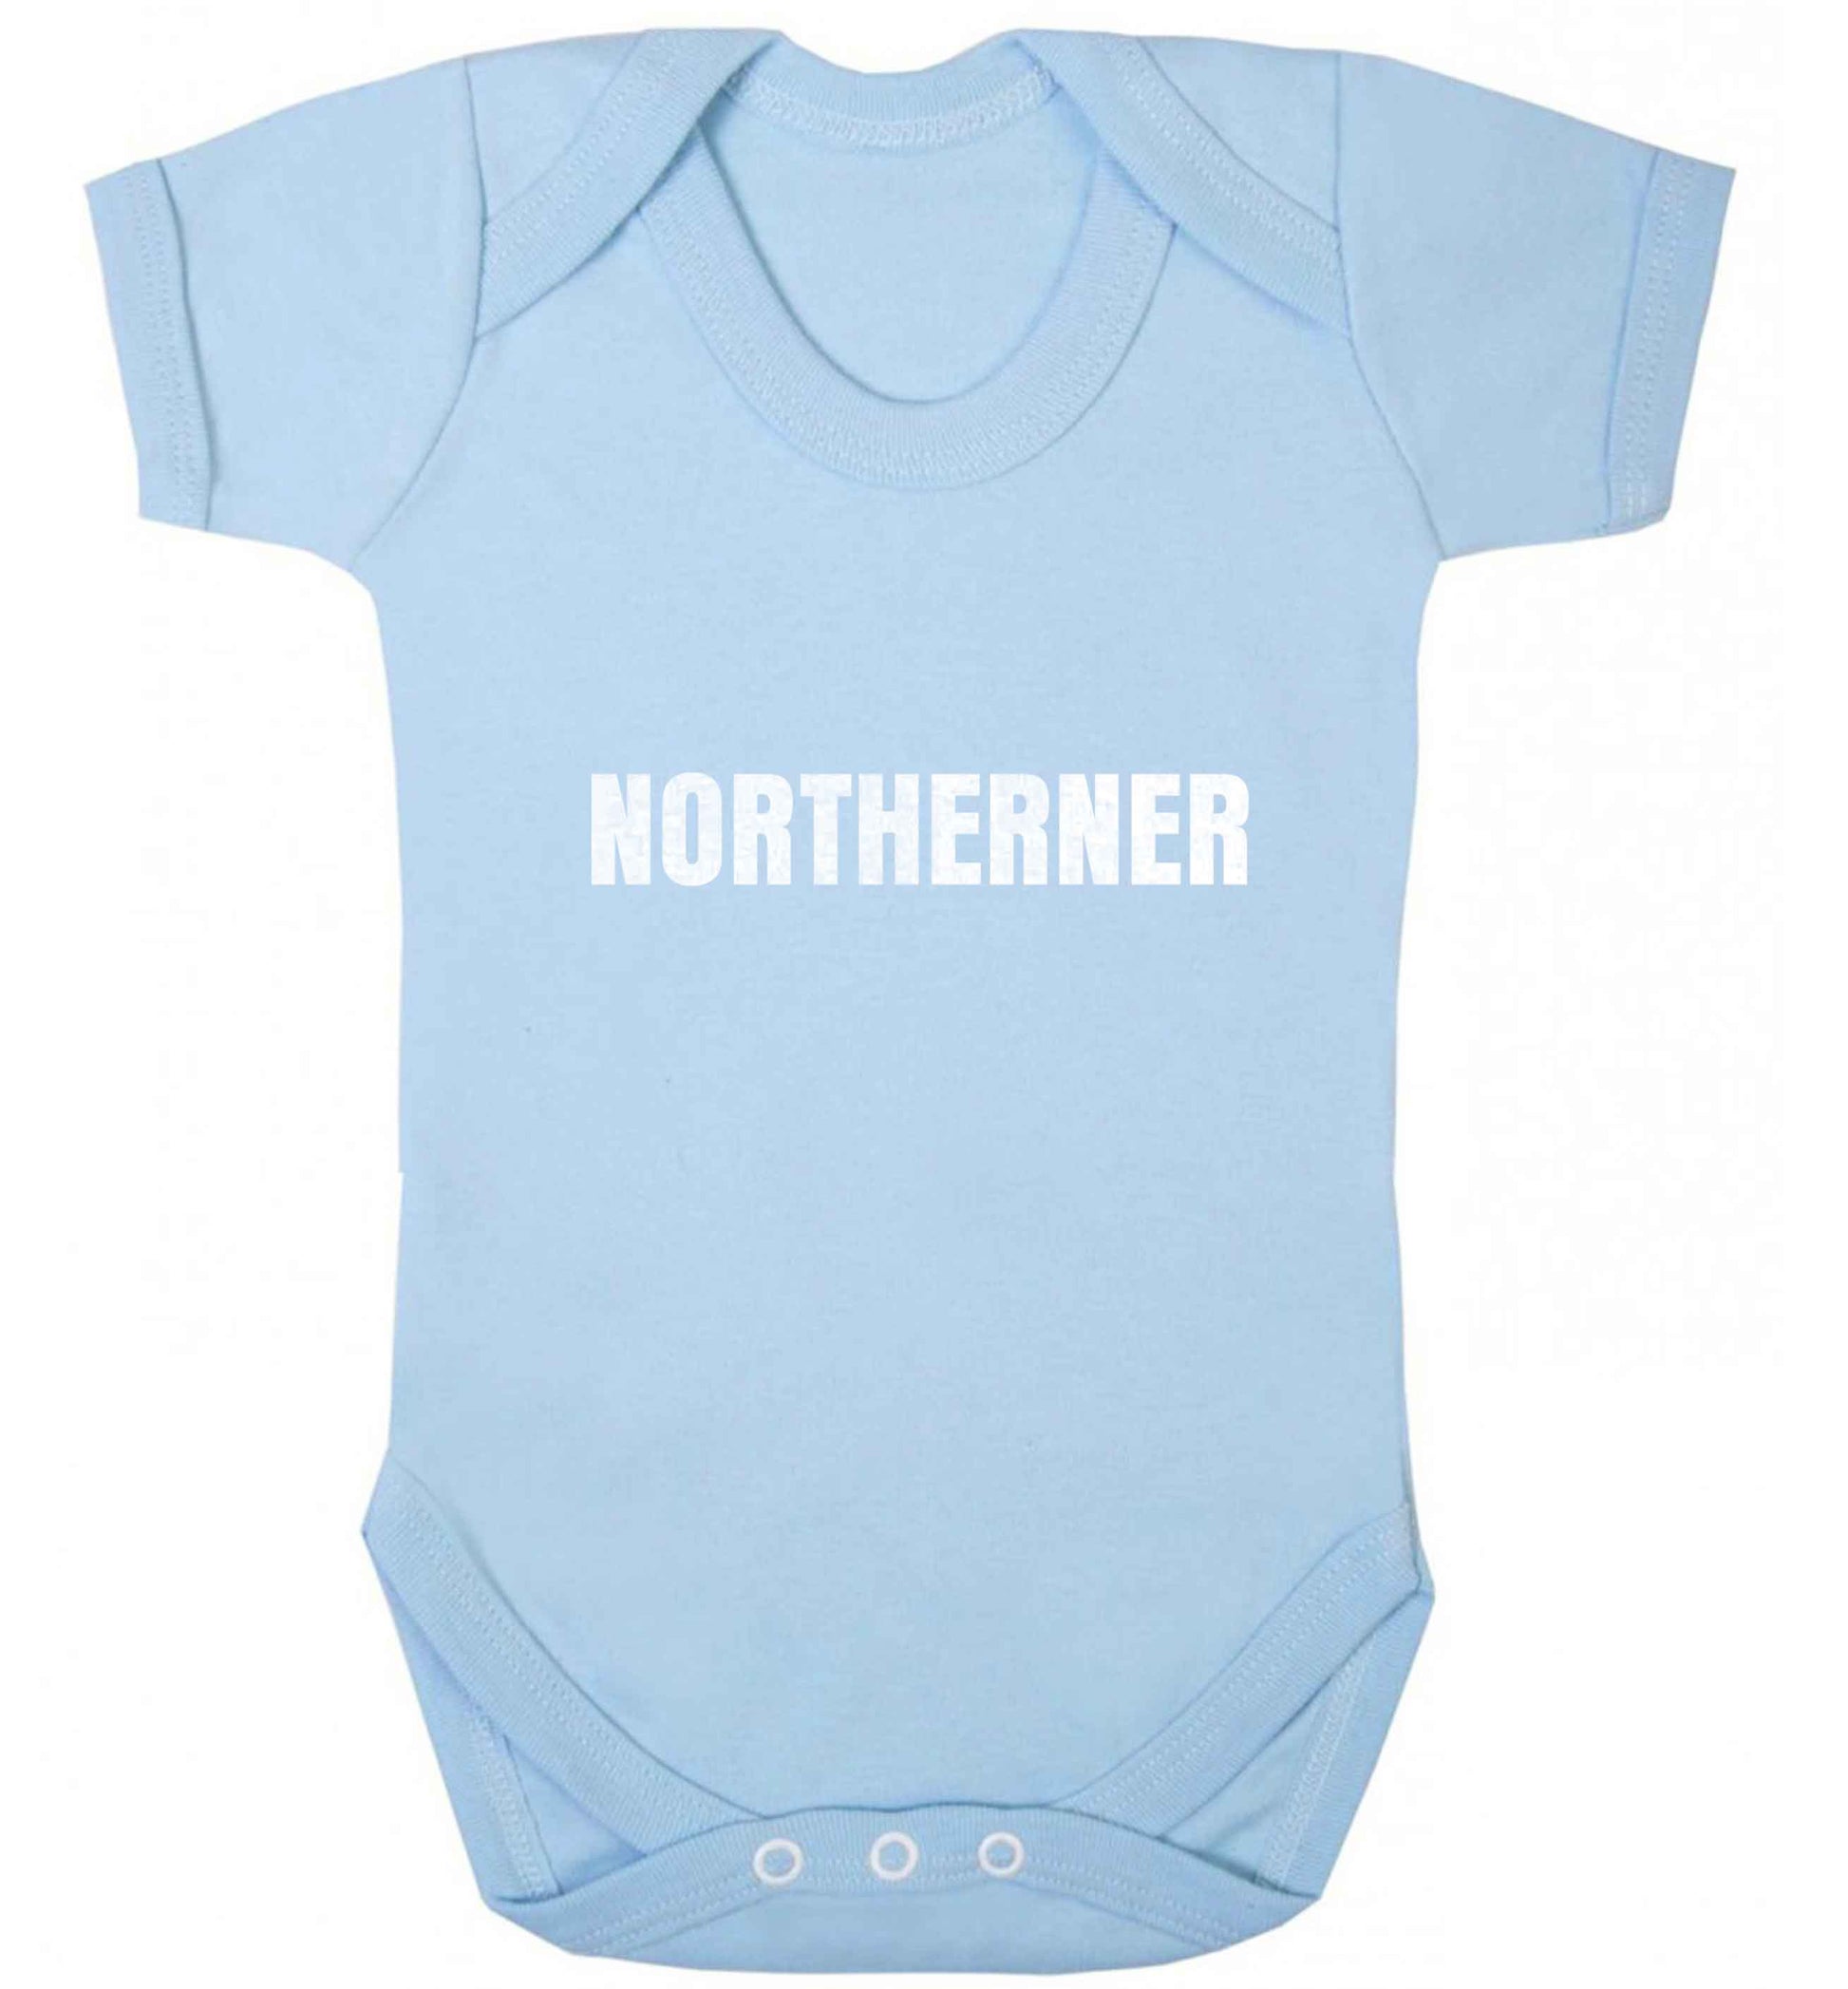 Northerner baby vest pale blue 18-24 months